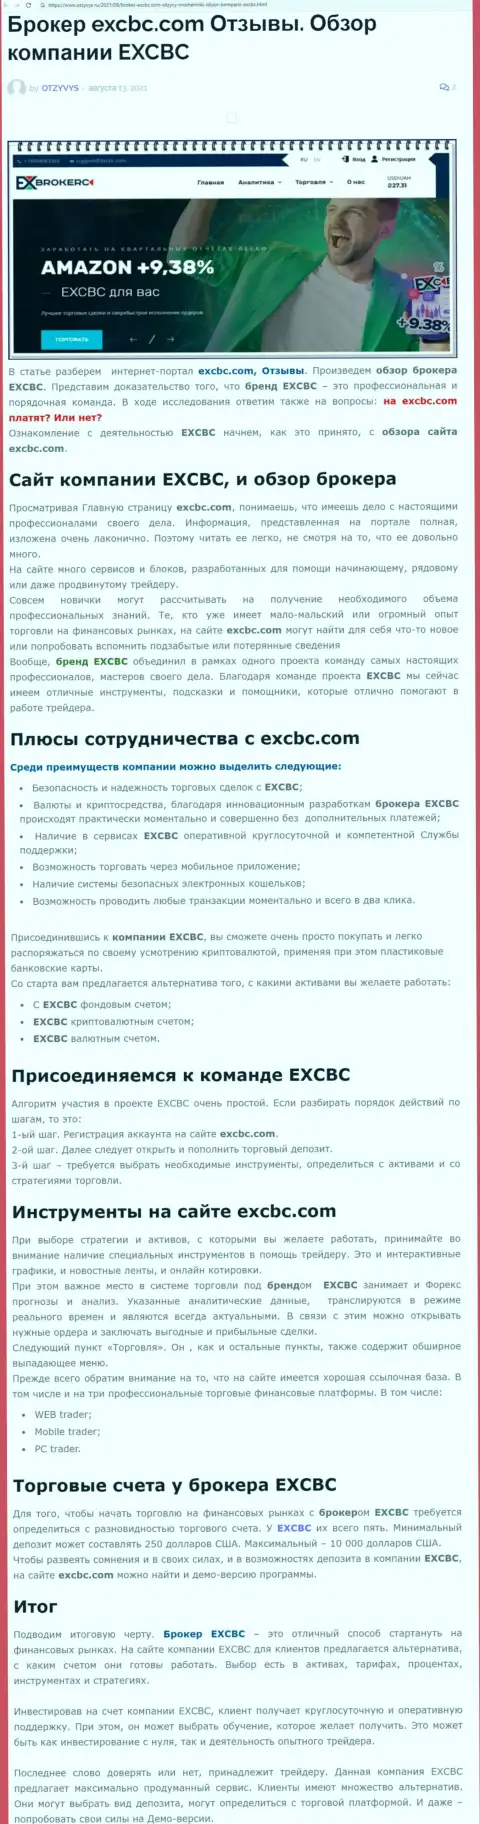 ЕХКБК Ком - ответственная и надежная Форекс организация, это следует из статьи на web-ресурсе Otzyvys Ru